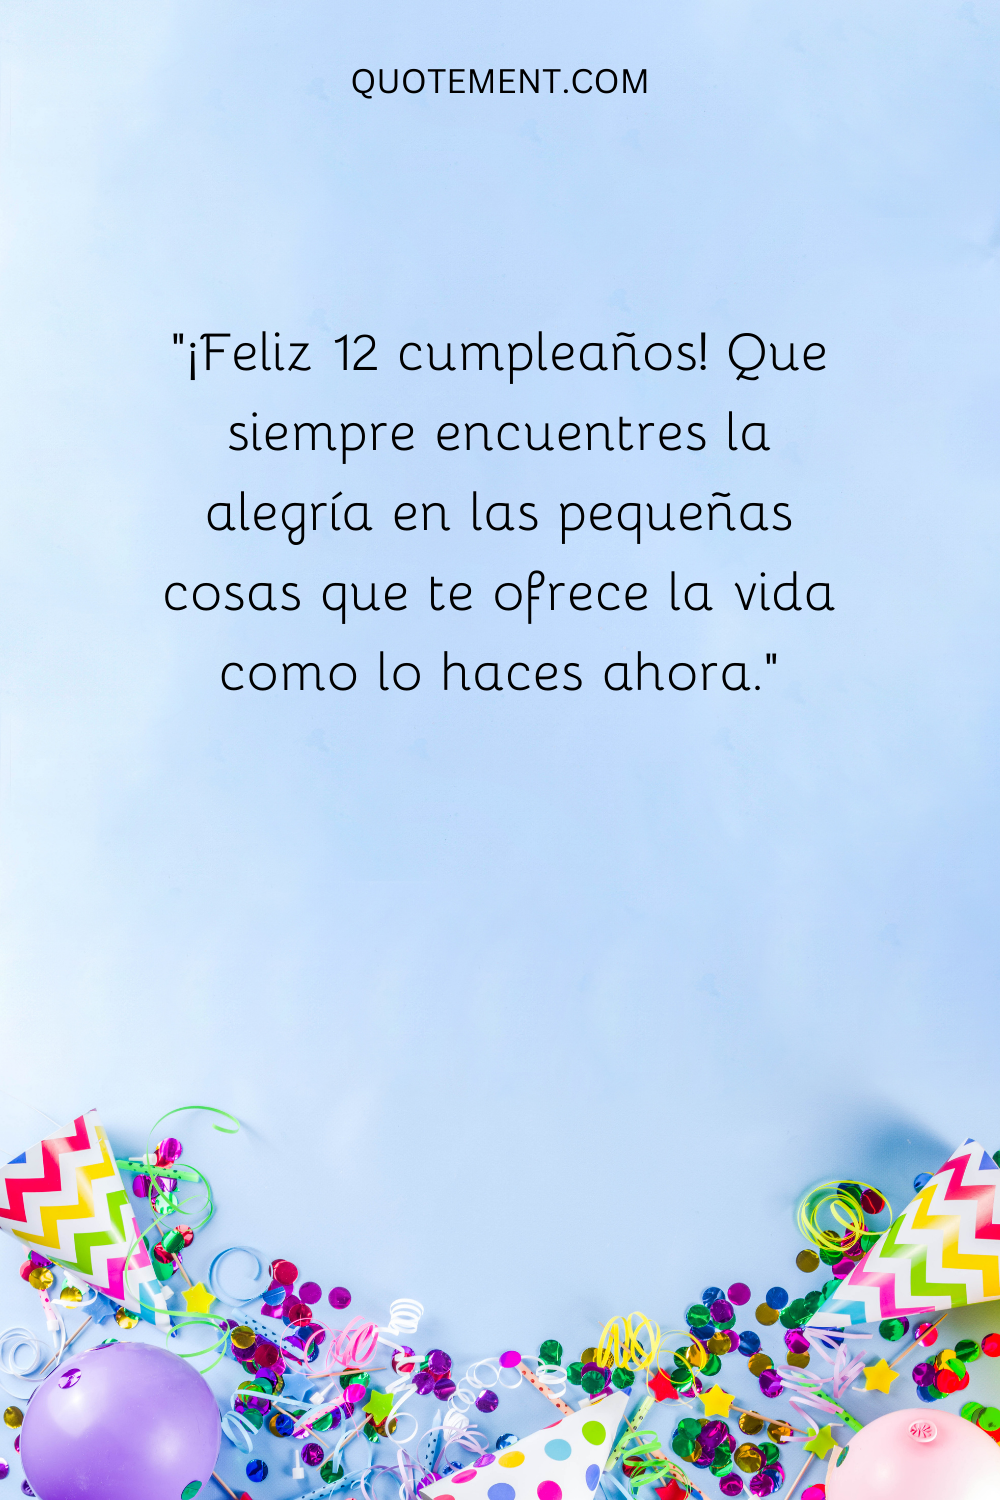 "¡Feliz 12 cumpleaños! Que siempre encuentres la alegría en las pequeñas cosas que te ofrece la vida como lo haces ahora".